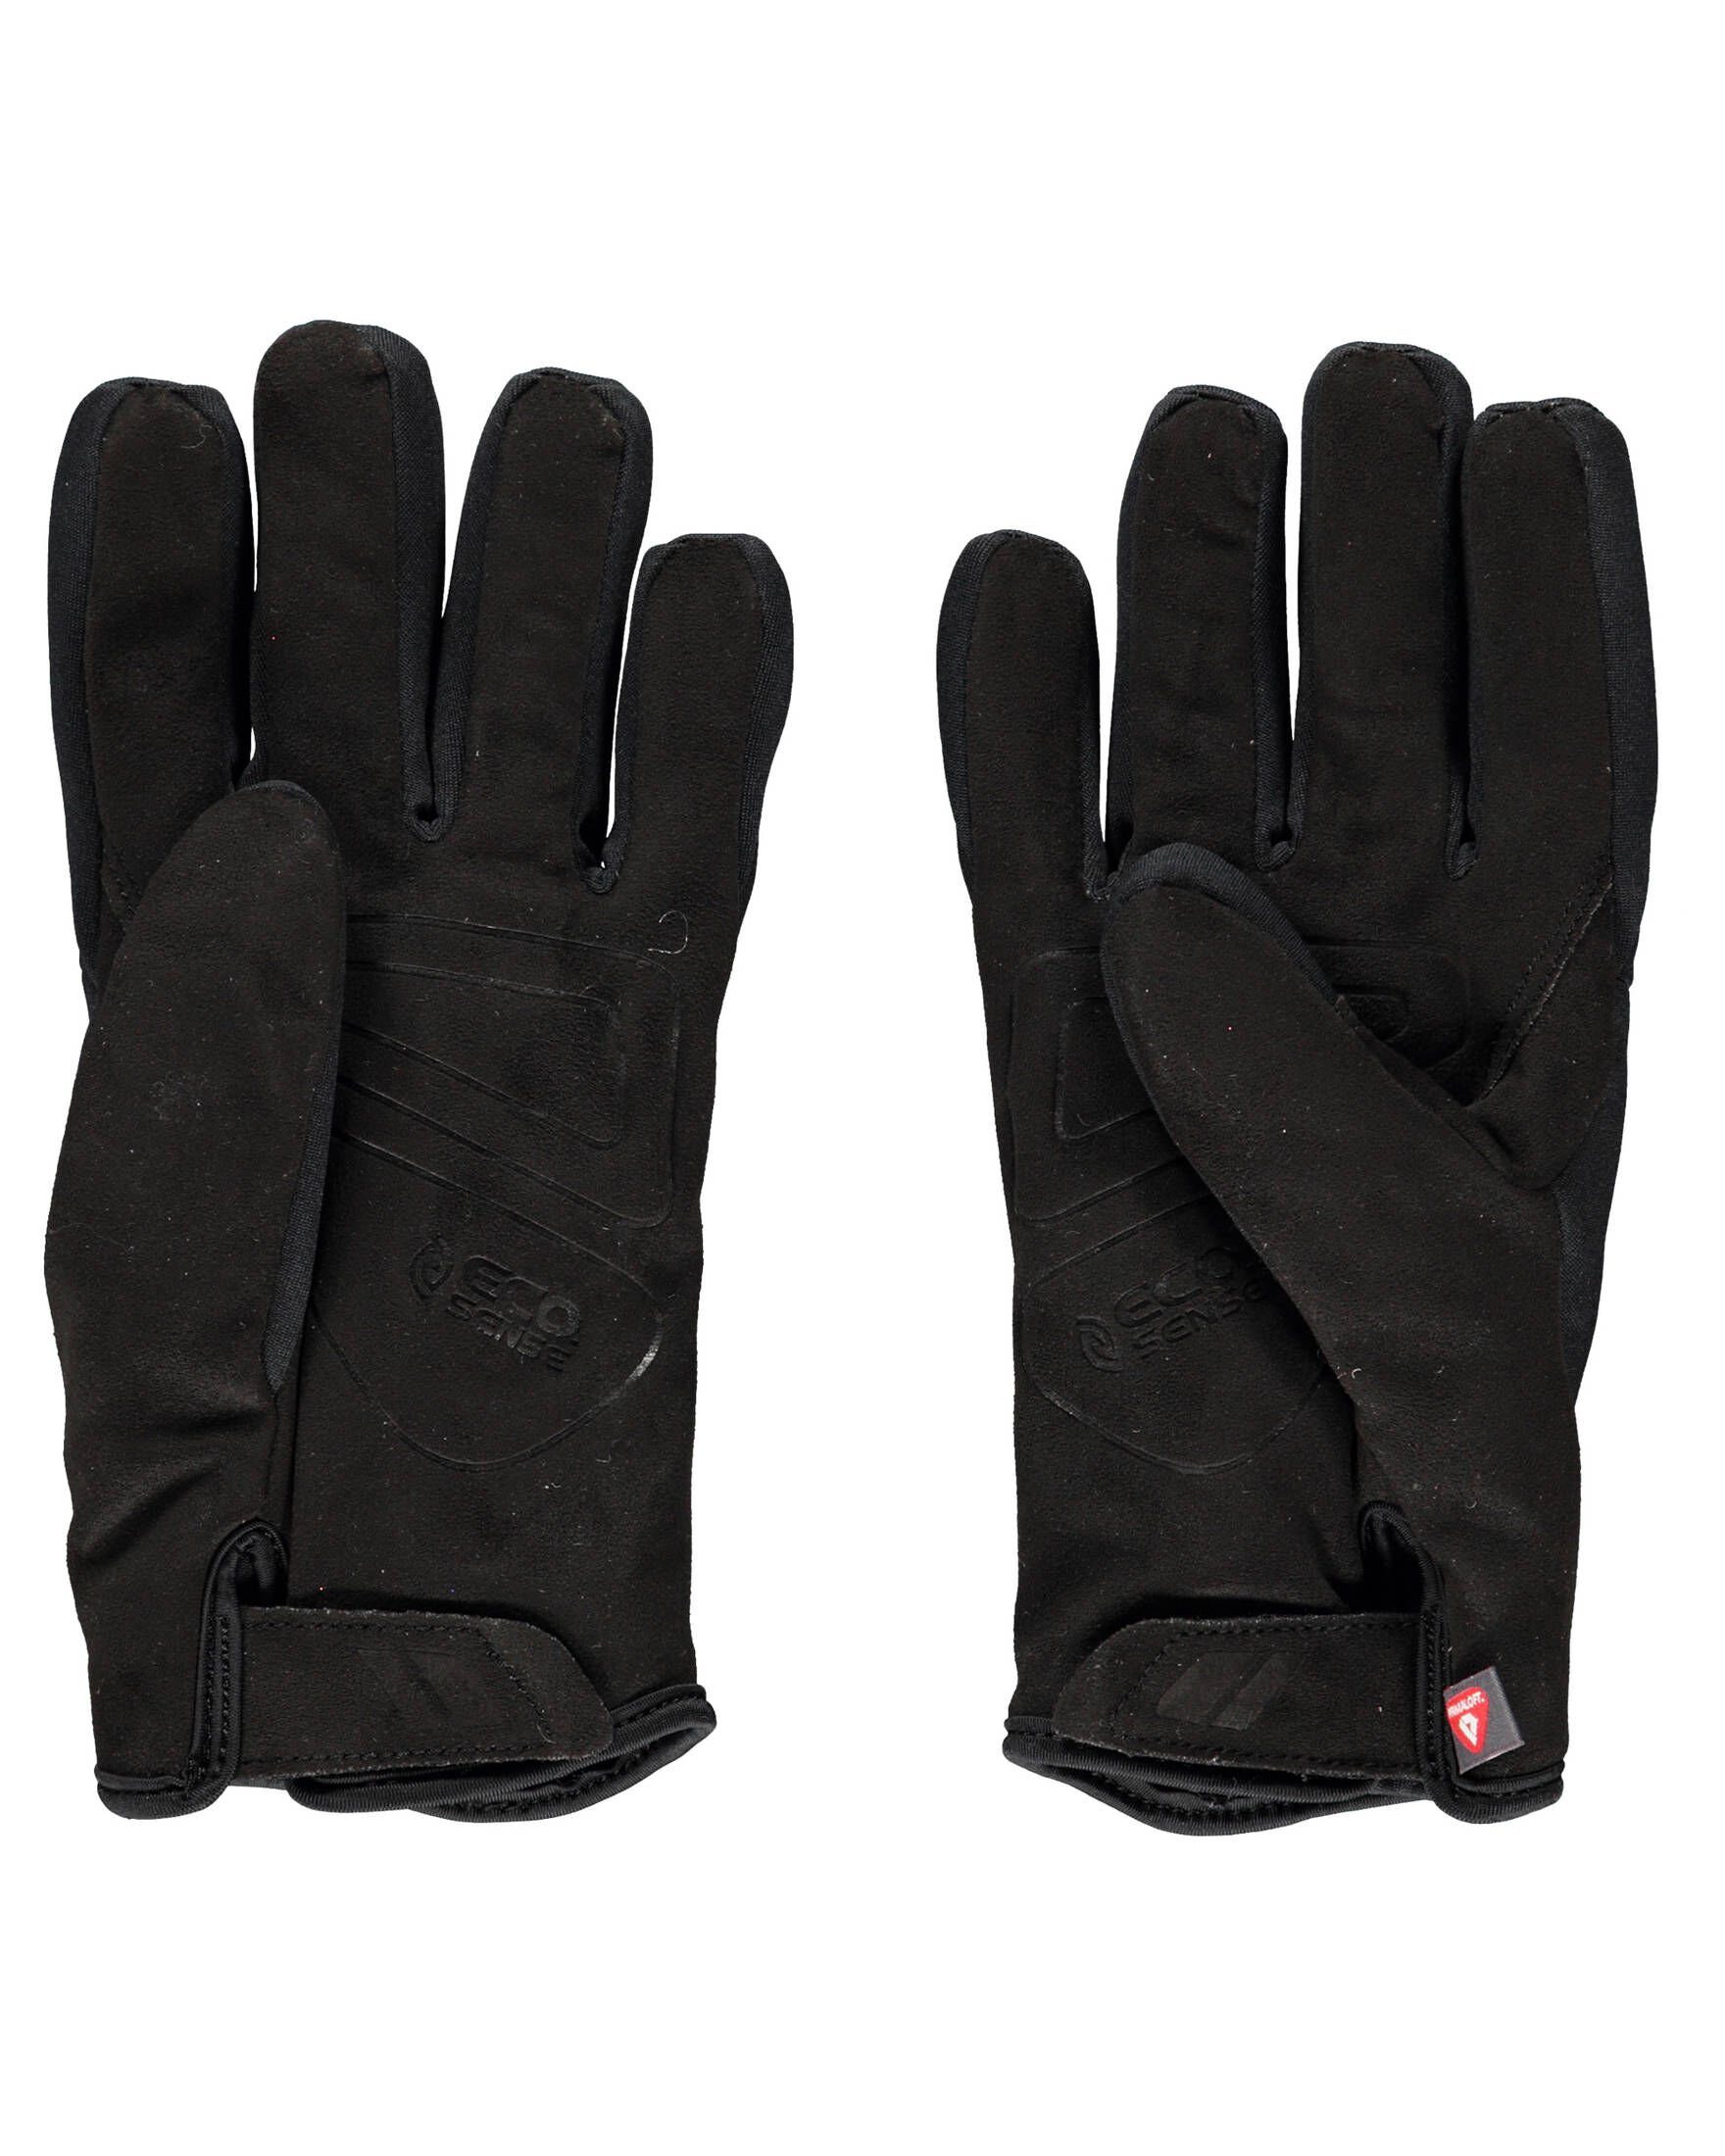 Roeckl SPORTS Fahrradhandschuhe Handschuhe schwarz (200) VALEPP Fahrrad